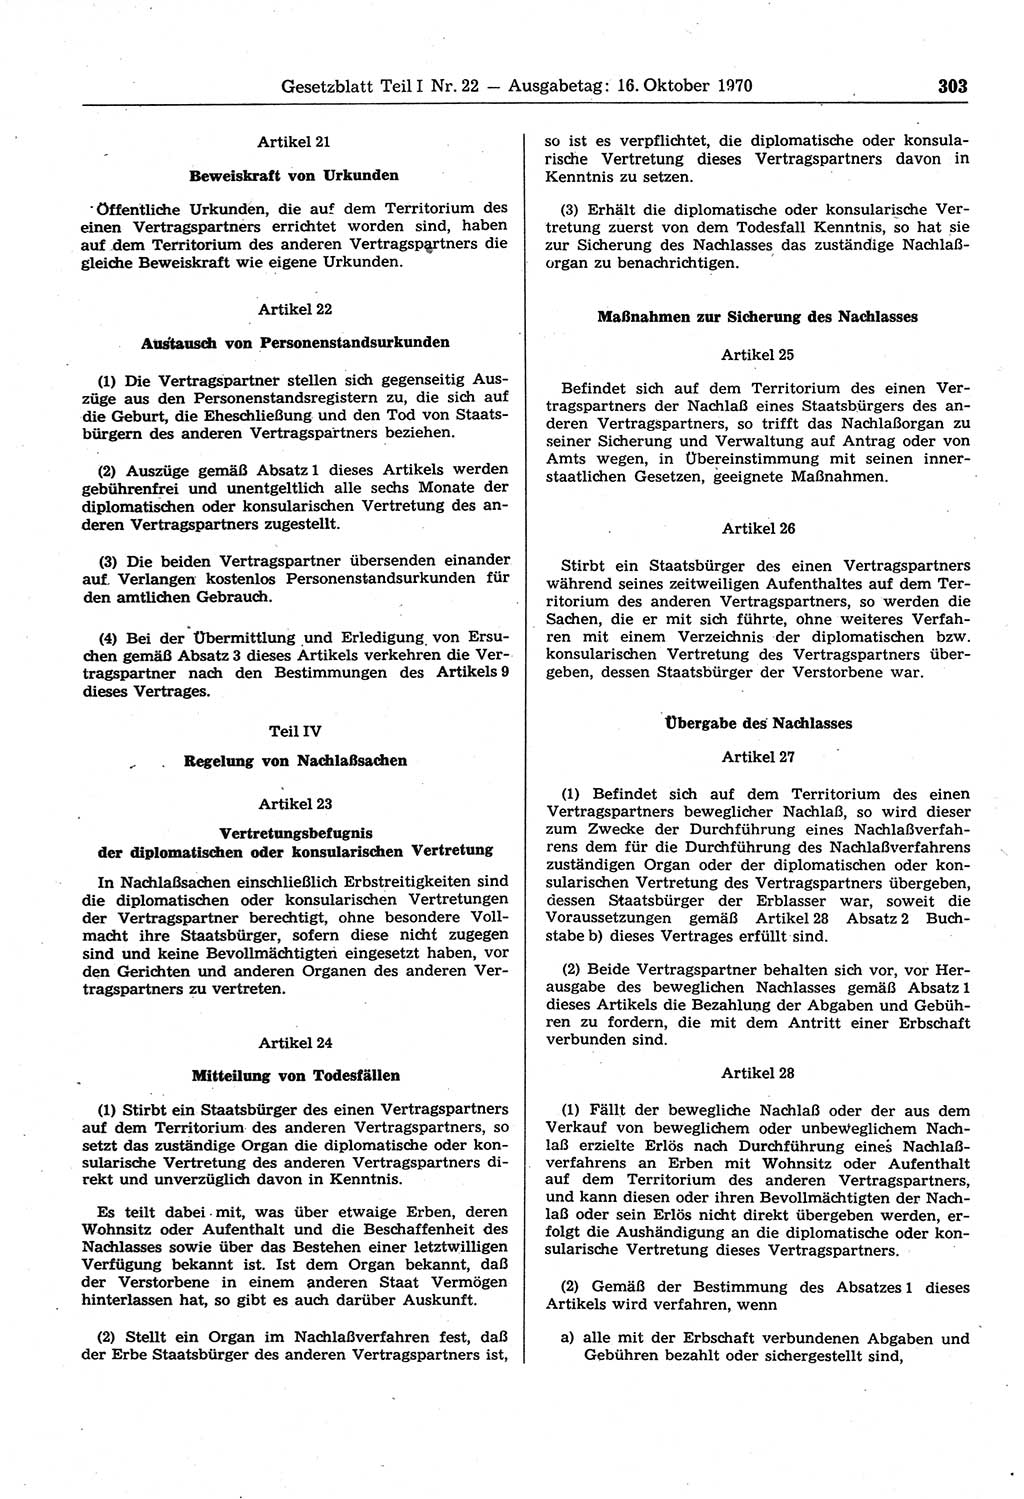 Gesetzblatt (GBl.) der Deutschen Demokratischen Republik (DDR) Teil Ⅰ 1970, Seite 303 (GBl. DDR Ⅰ 1970, S. 303)